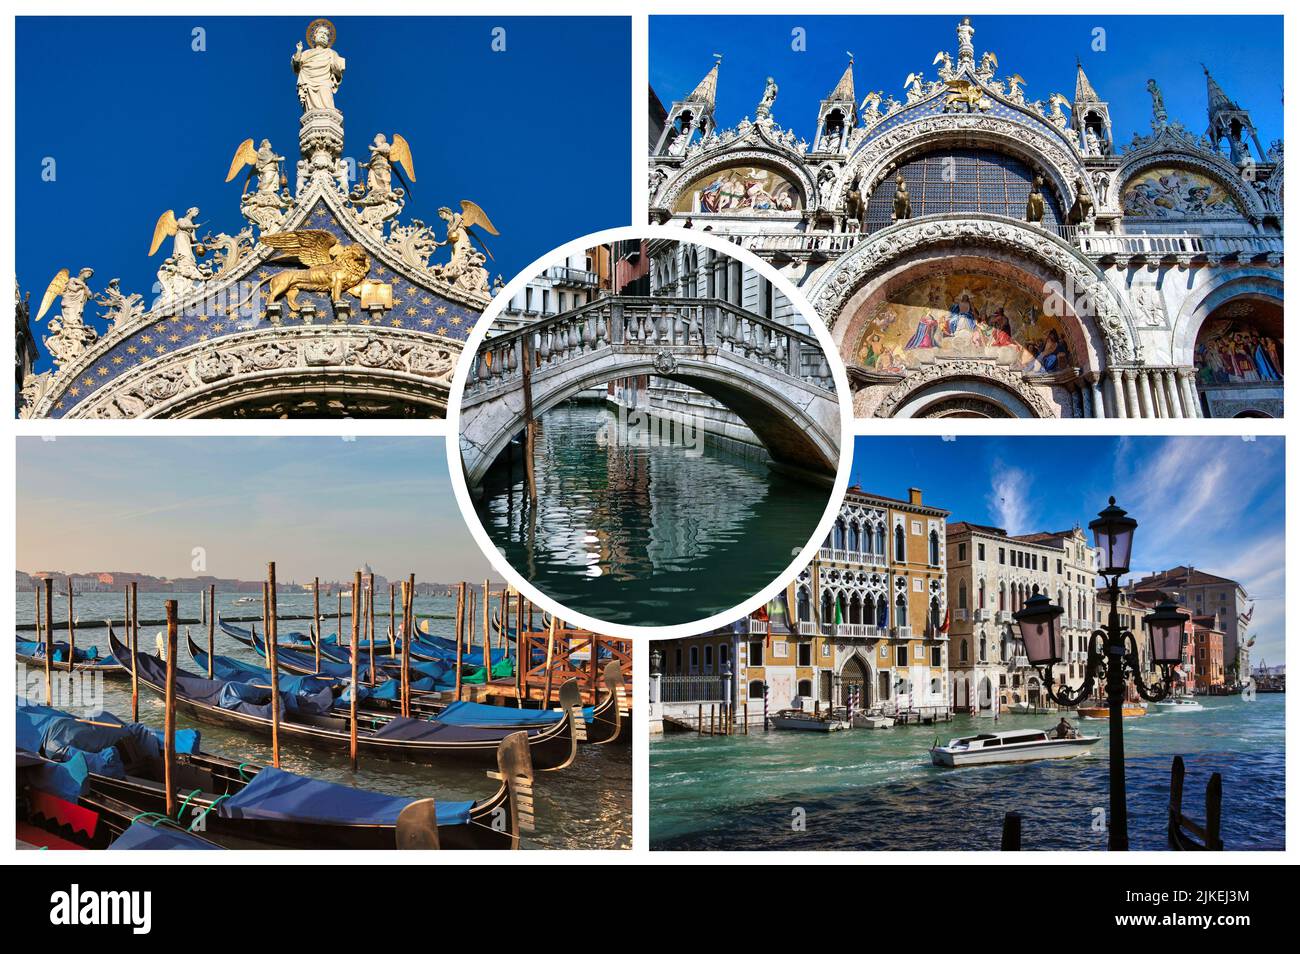 Vacanze in Italia,cartoline vintage di Venezia Stock Illustration